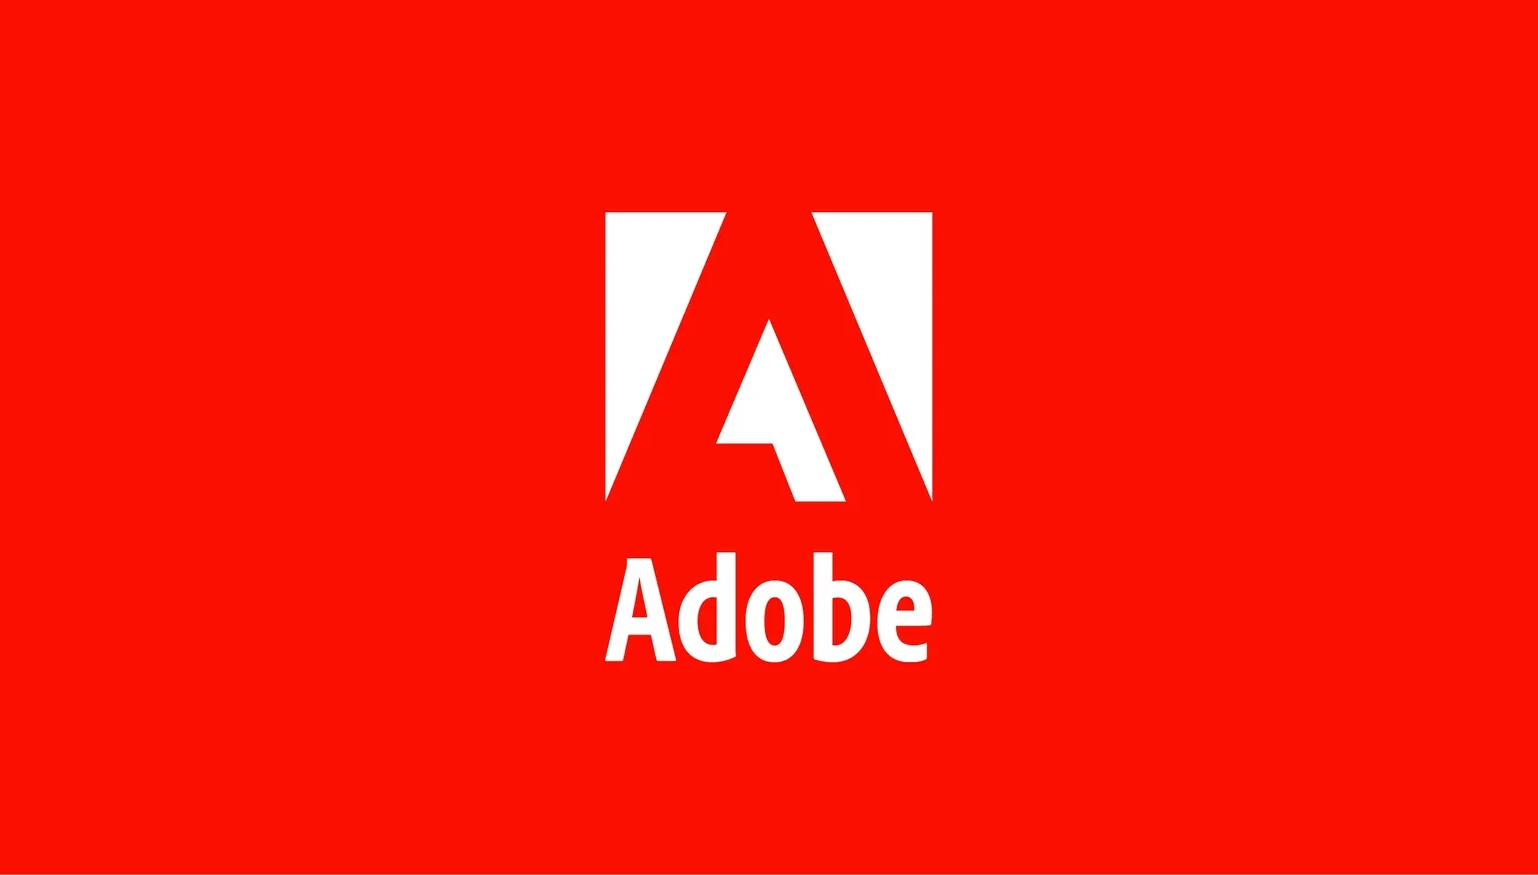 Adobe wstrzymuje sprzedaż swoich produktów w Rosji